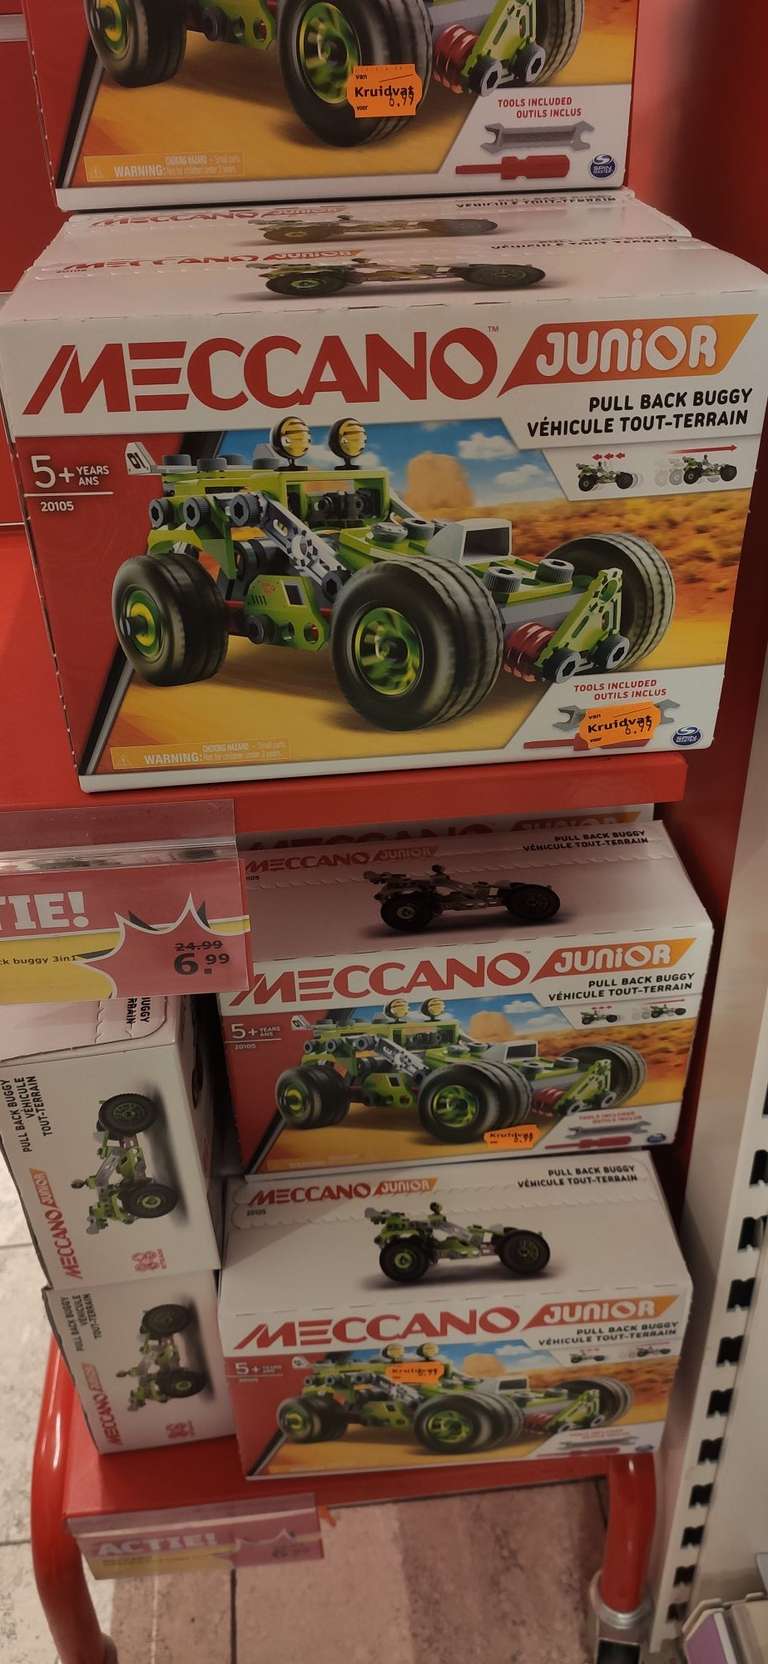 Meccano Junior terugtrek buggy - lokaal?